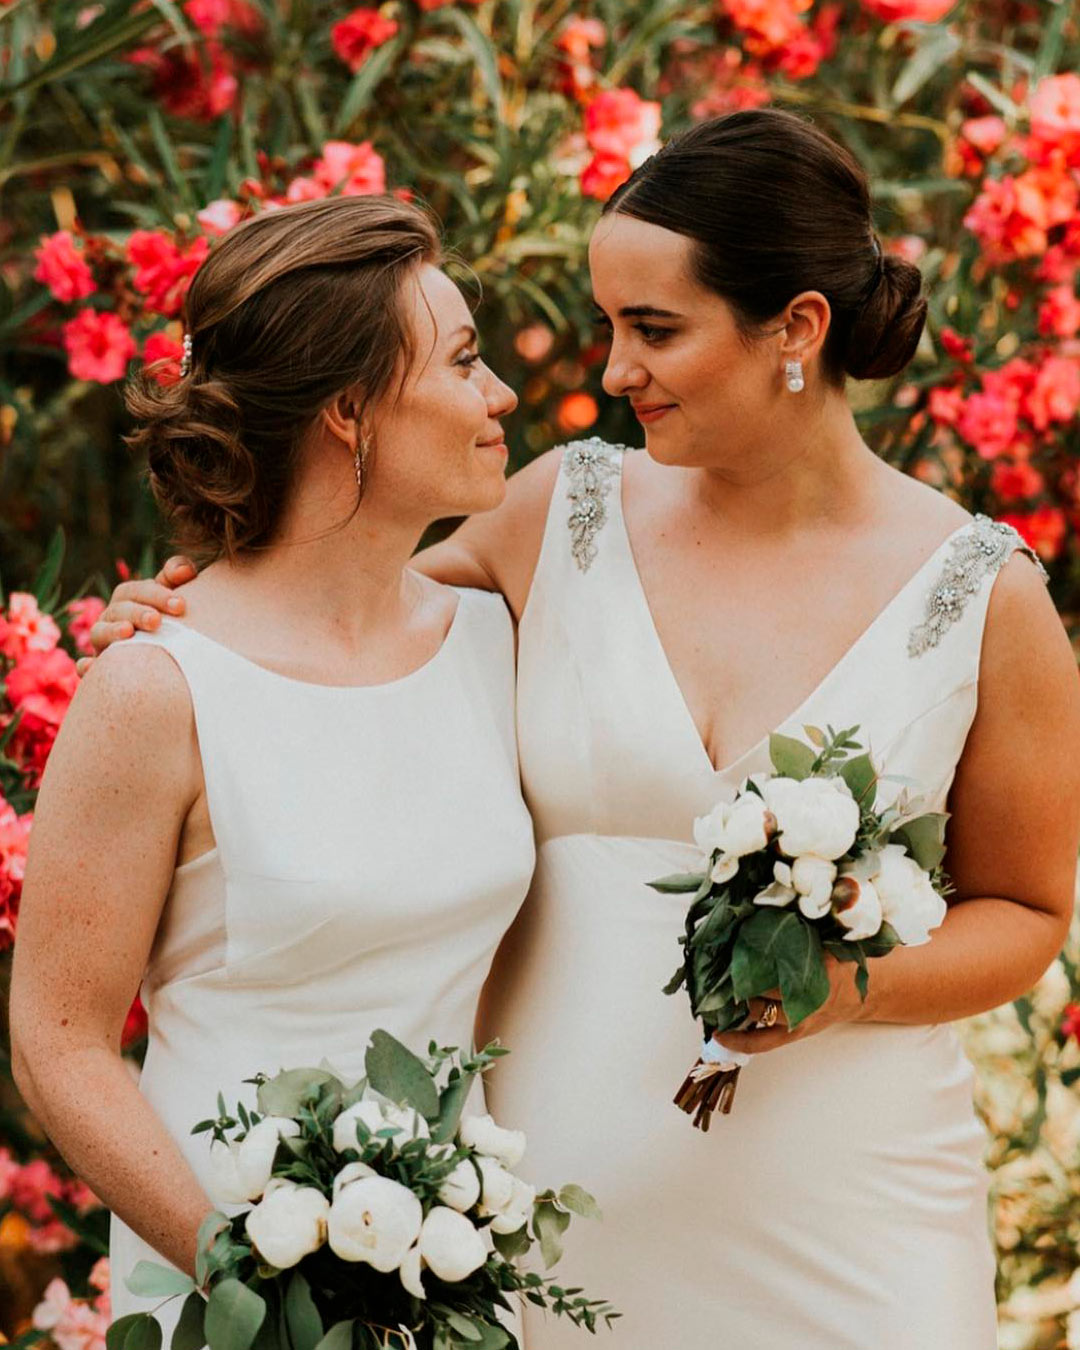 wedding officiant speeches same sex brides